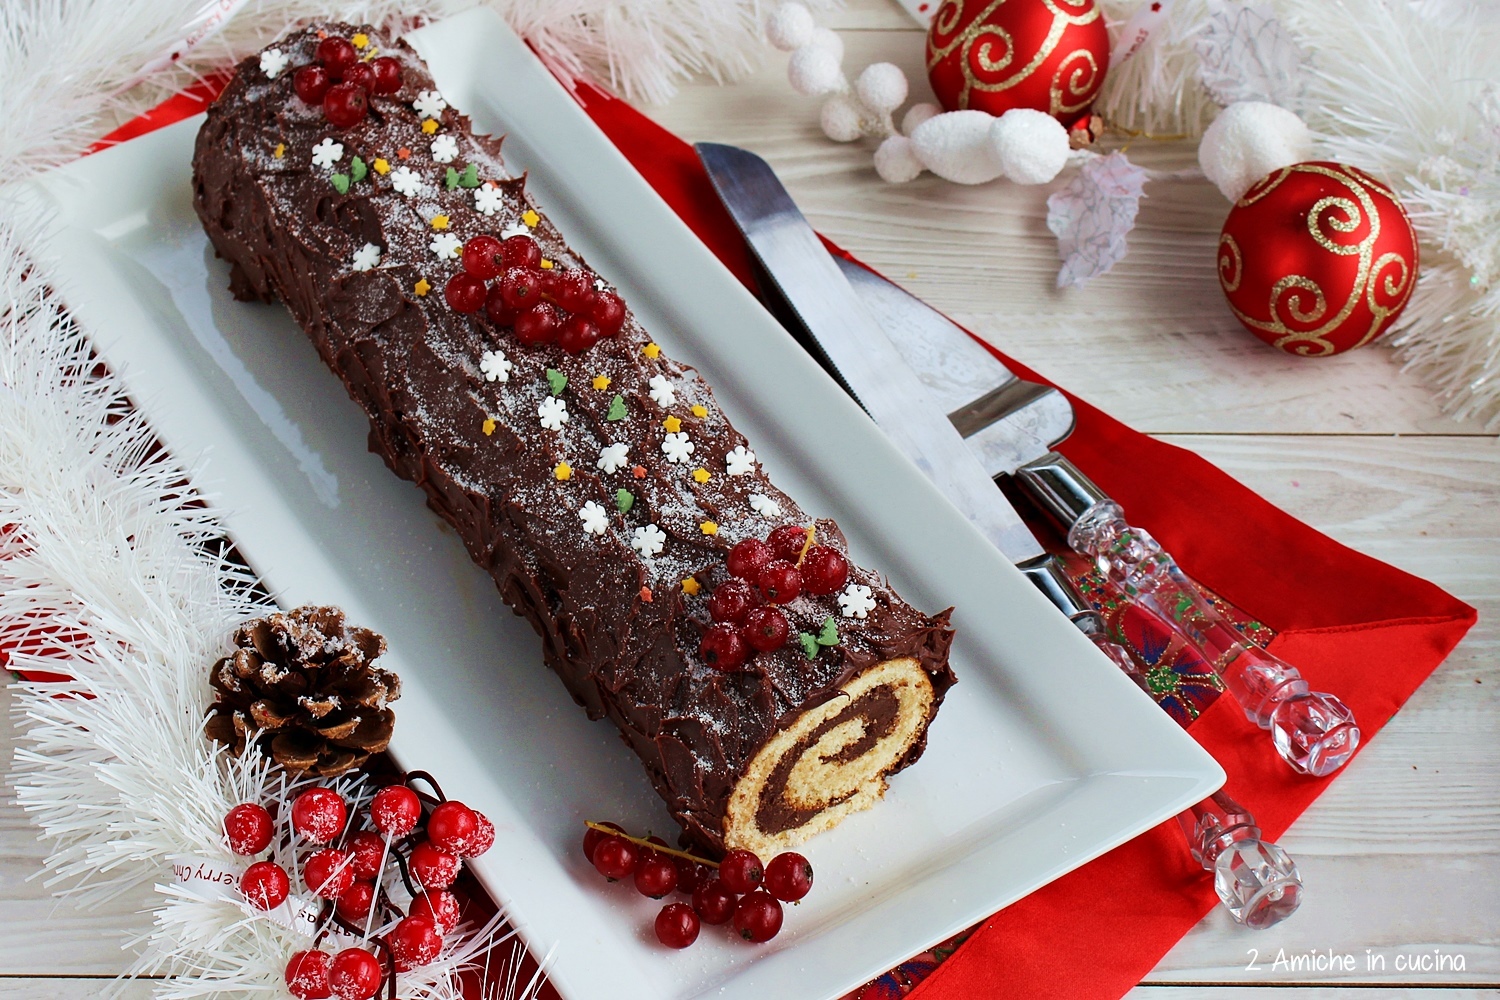 Tronchetto Di Natale Decorazioni.Tronchetto Al Cioccolato Buche De Noel 2 Amiche In Cucina